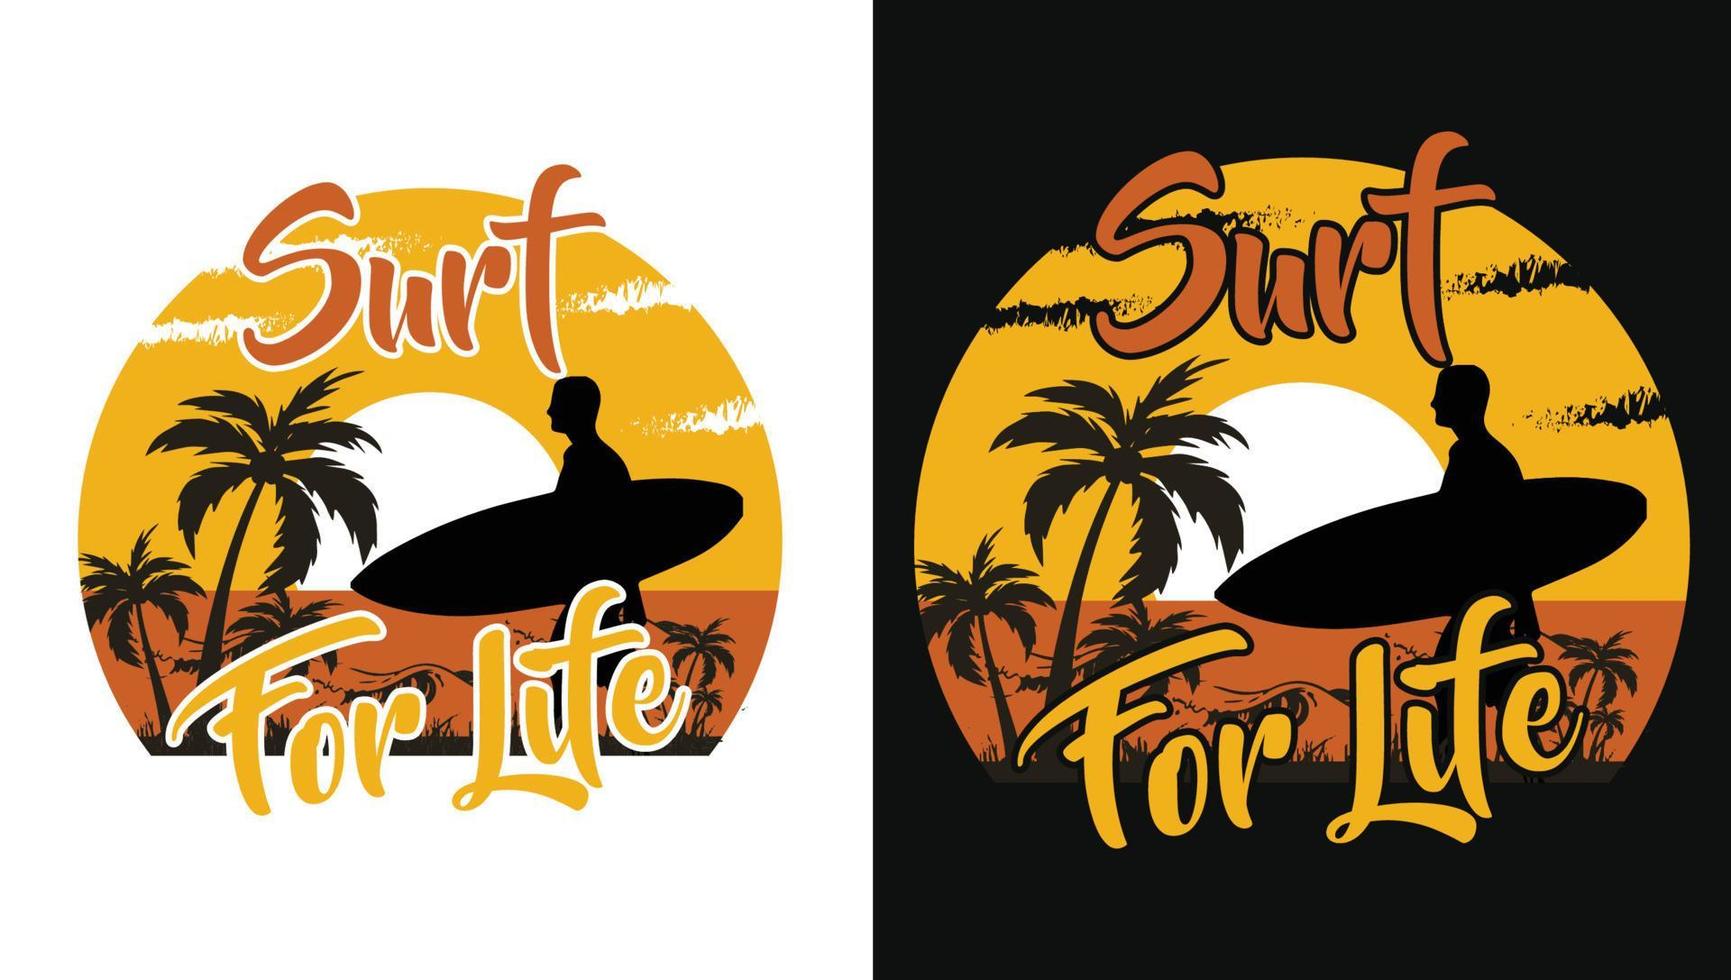 surfer pour la vie. design vintage rétro de surf pour t-shirt, bannière, affiche, tasse, etc. vecteur